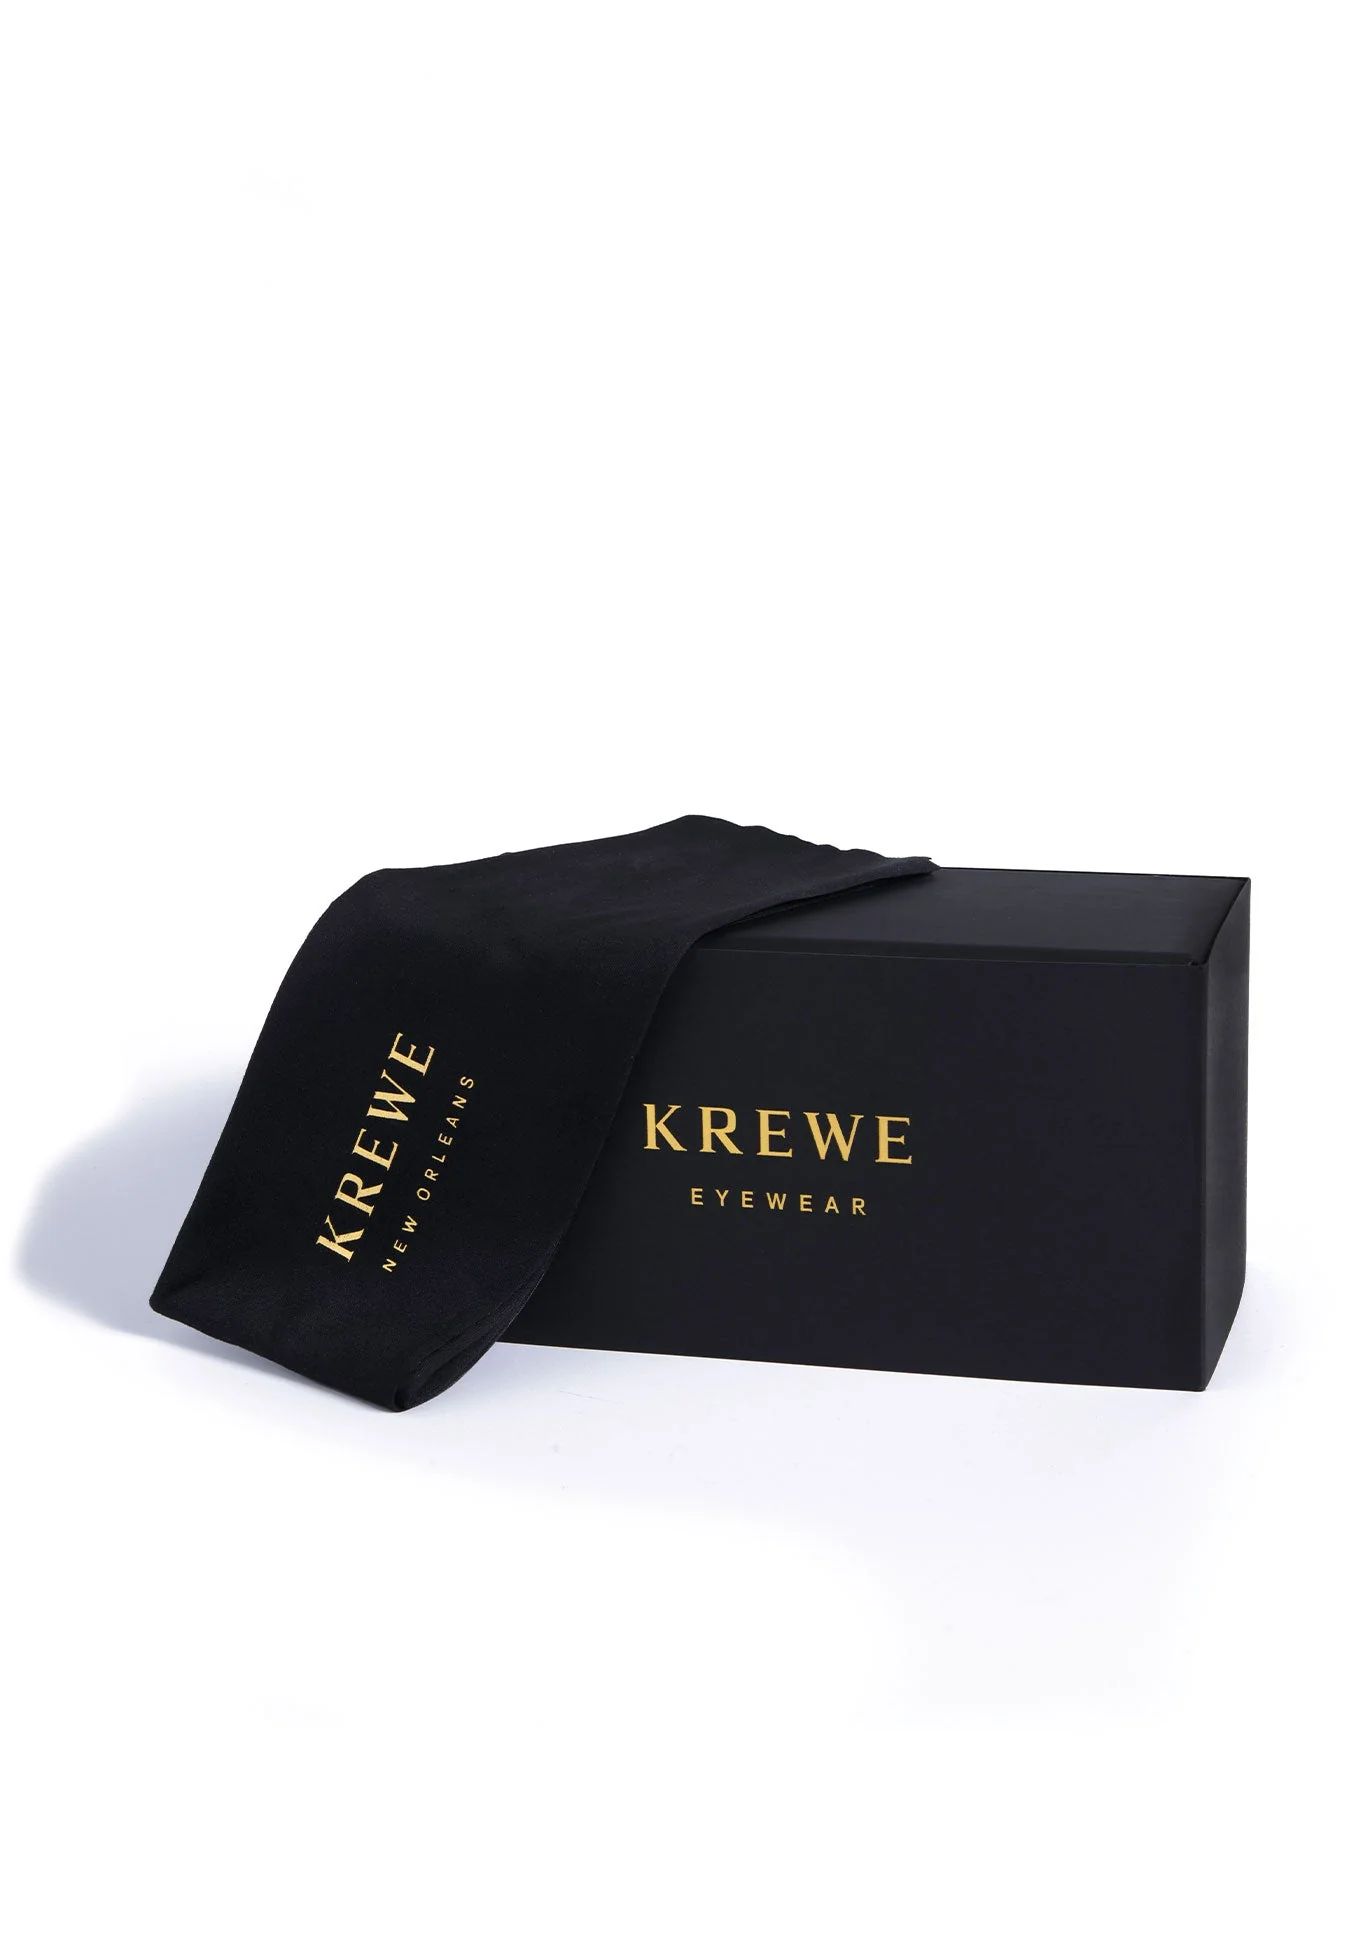 TRAVEL KIT | KREWE Eyewear